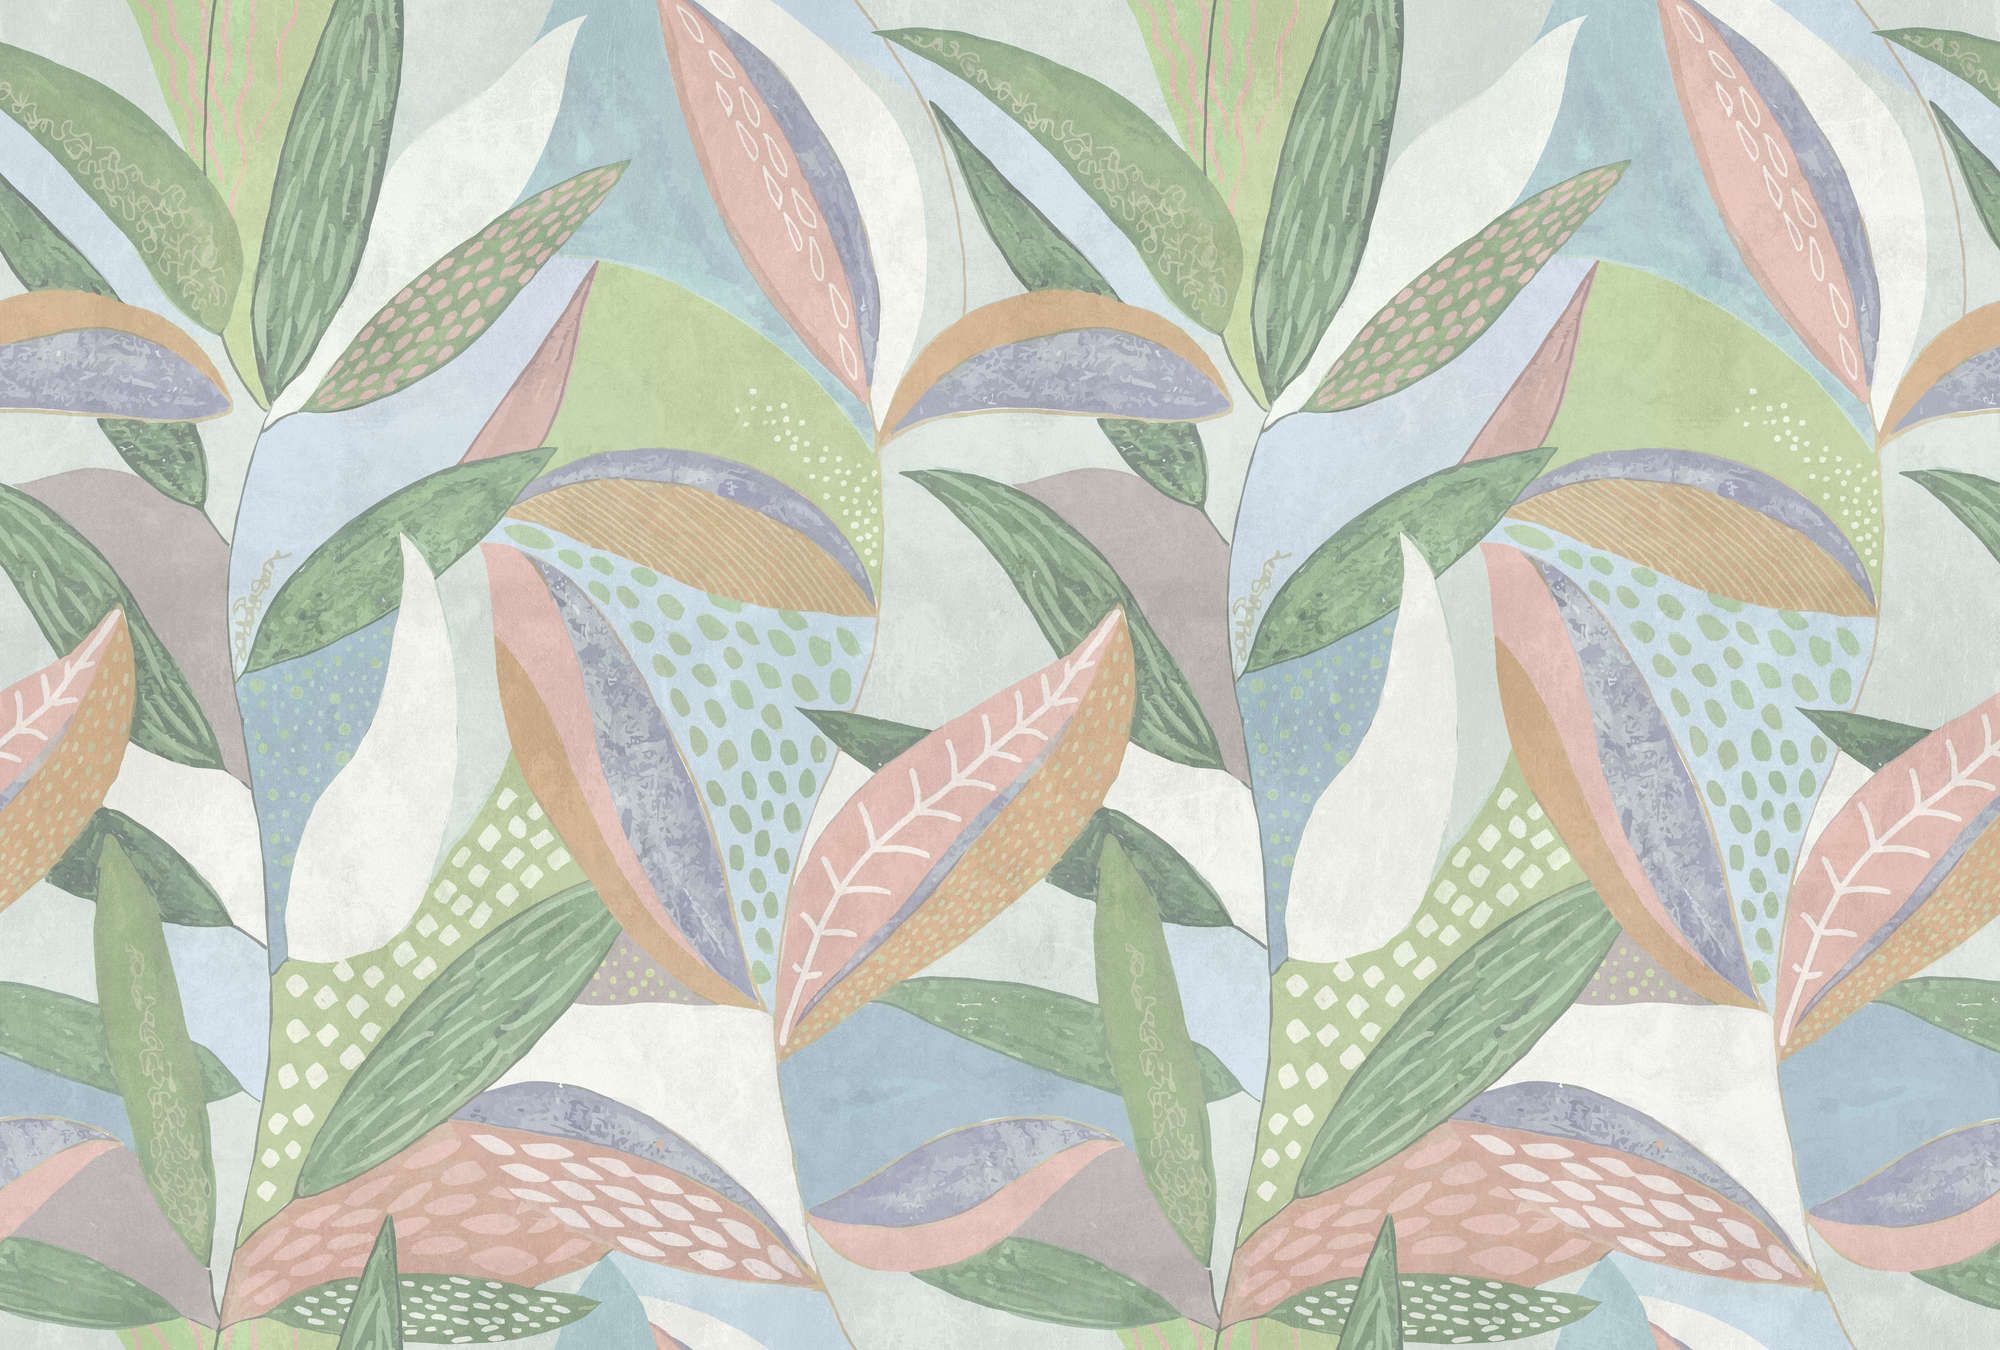             papier peint en papier panoramique »emilia« - Motif de feuilles pastel multicolores sur une structure d'enduit béton - vert, bleu, rose | Intissé lisse, légèrement nacré
        